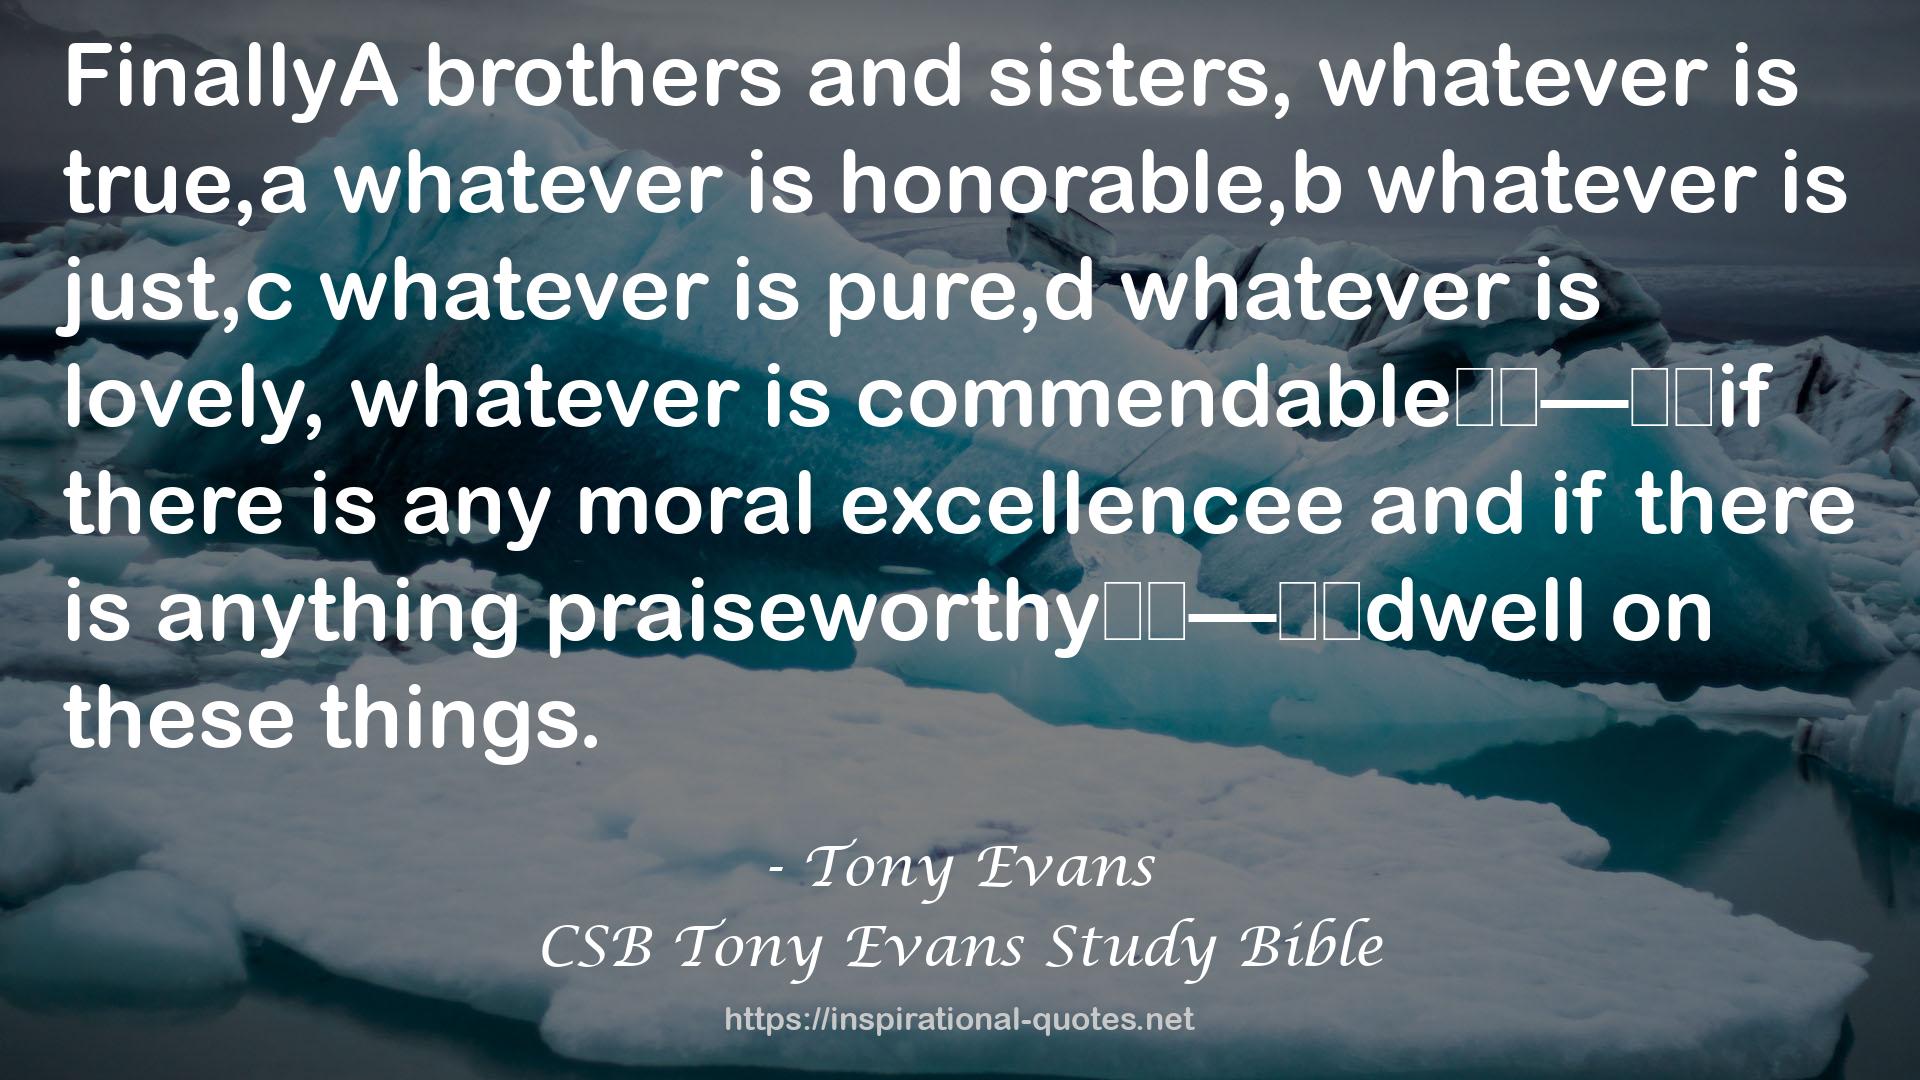 CSB Tony Evans Study Bible QUOTES